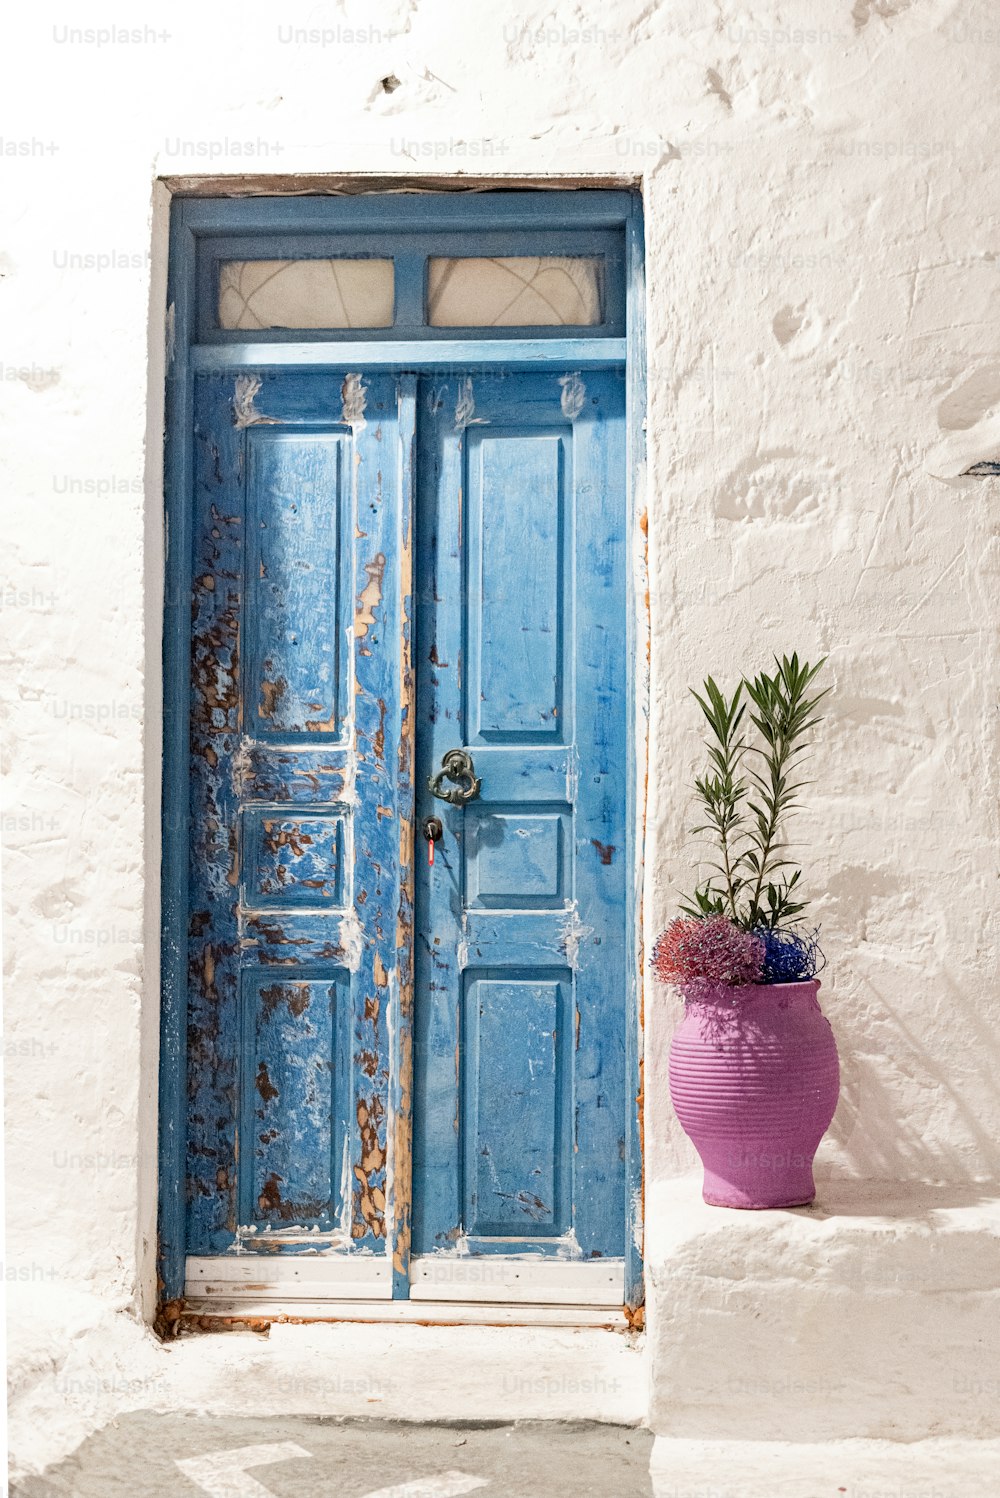 uma porta azul e um vaso de planta roxo na frente dela